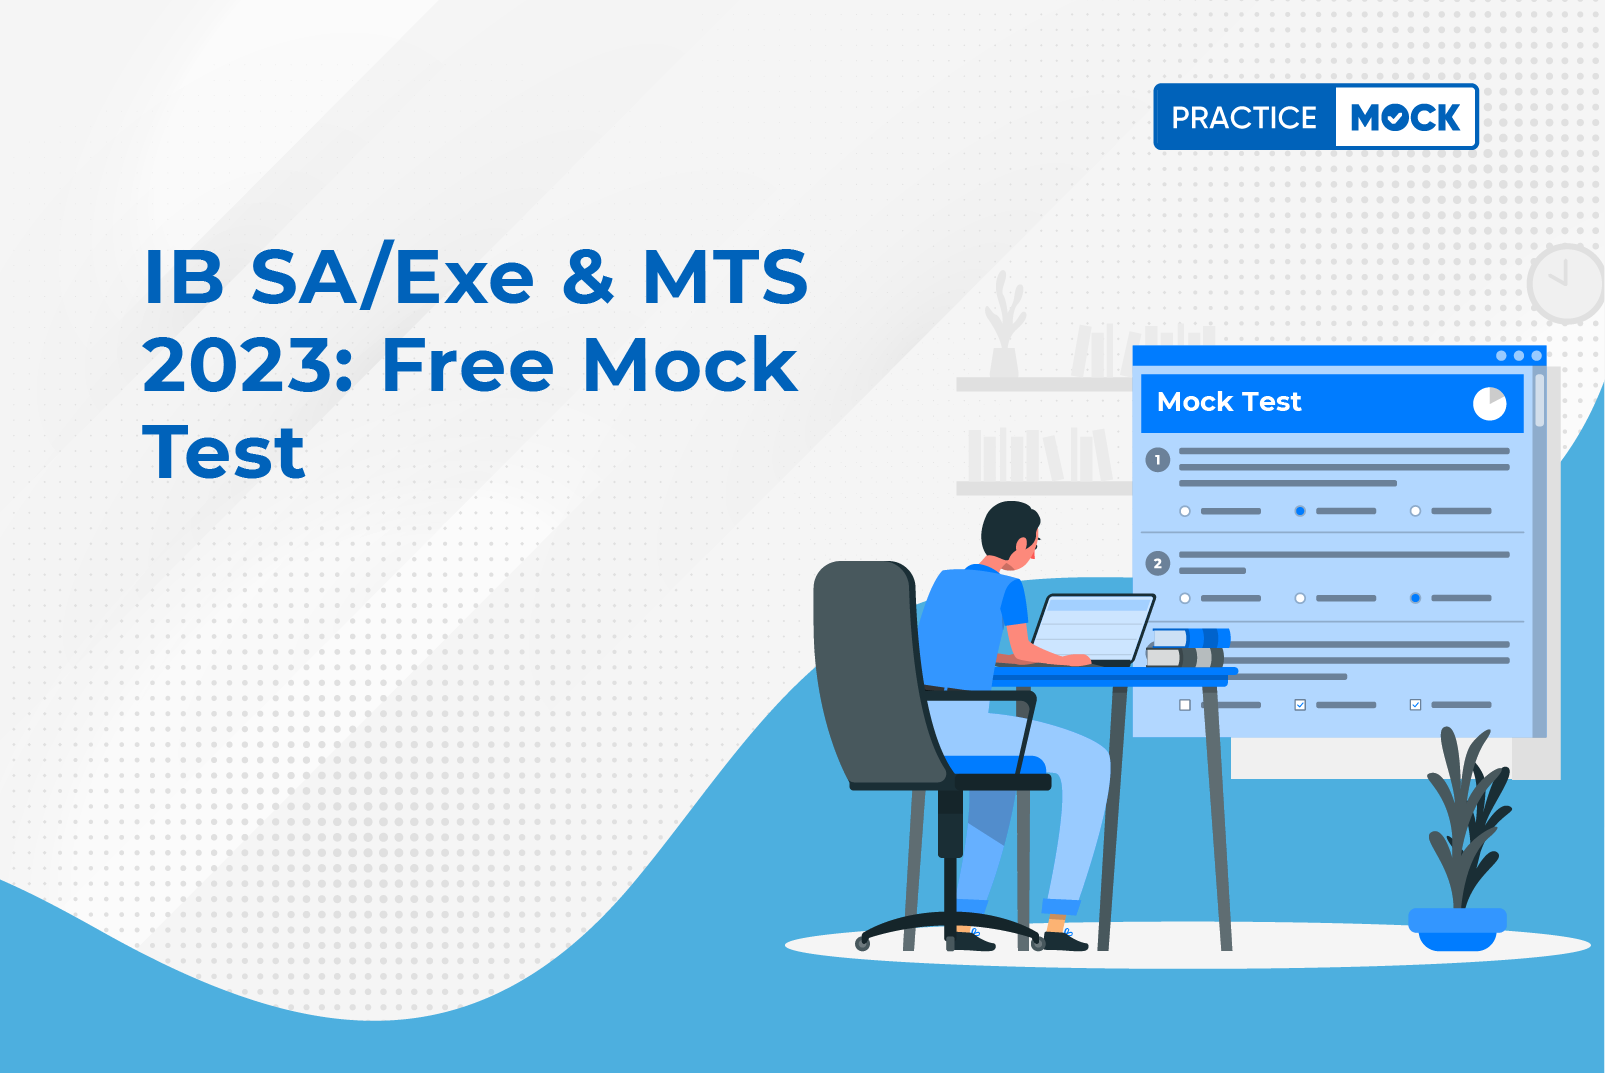 IB SA/Exe & MTS 2023 Free Mock Test